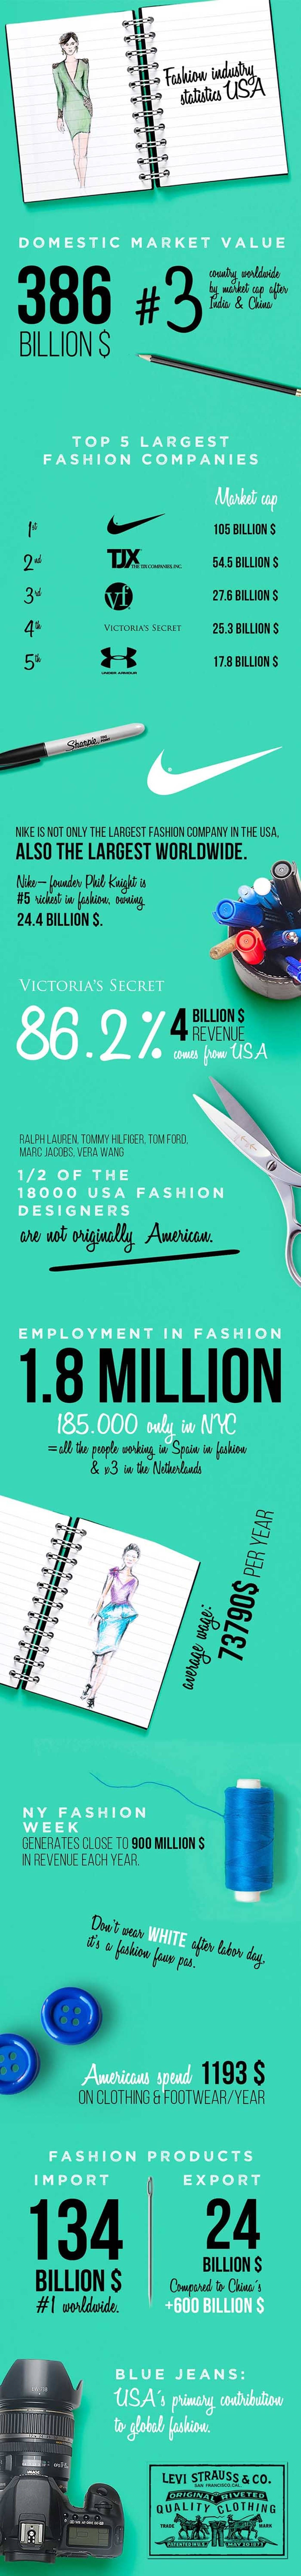 Statistiques de l’Industrie de la Mode, 1ère partie: les Etats-Unis